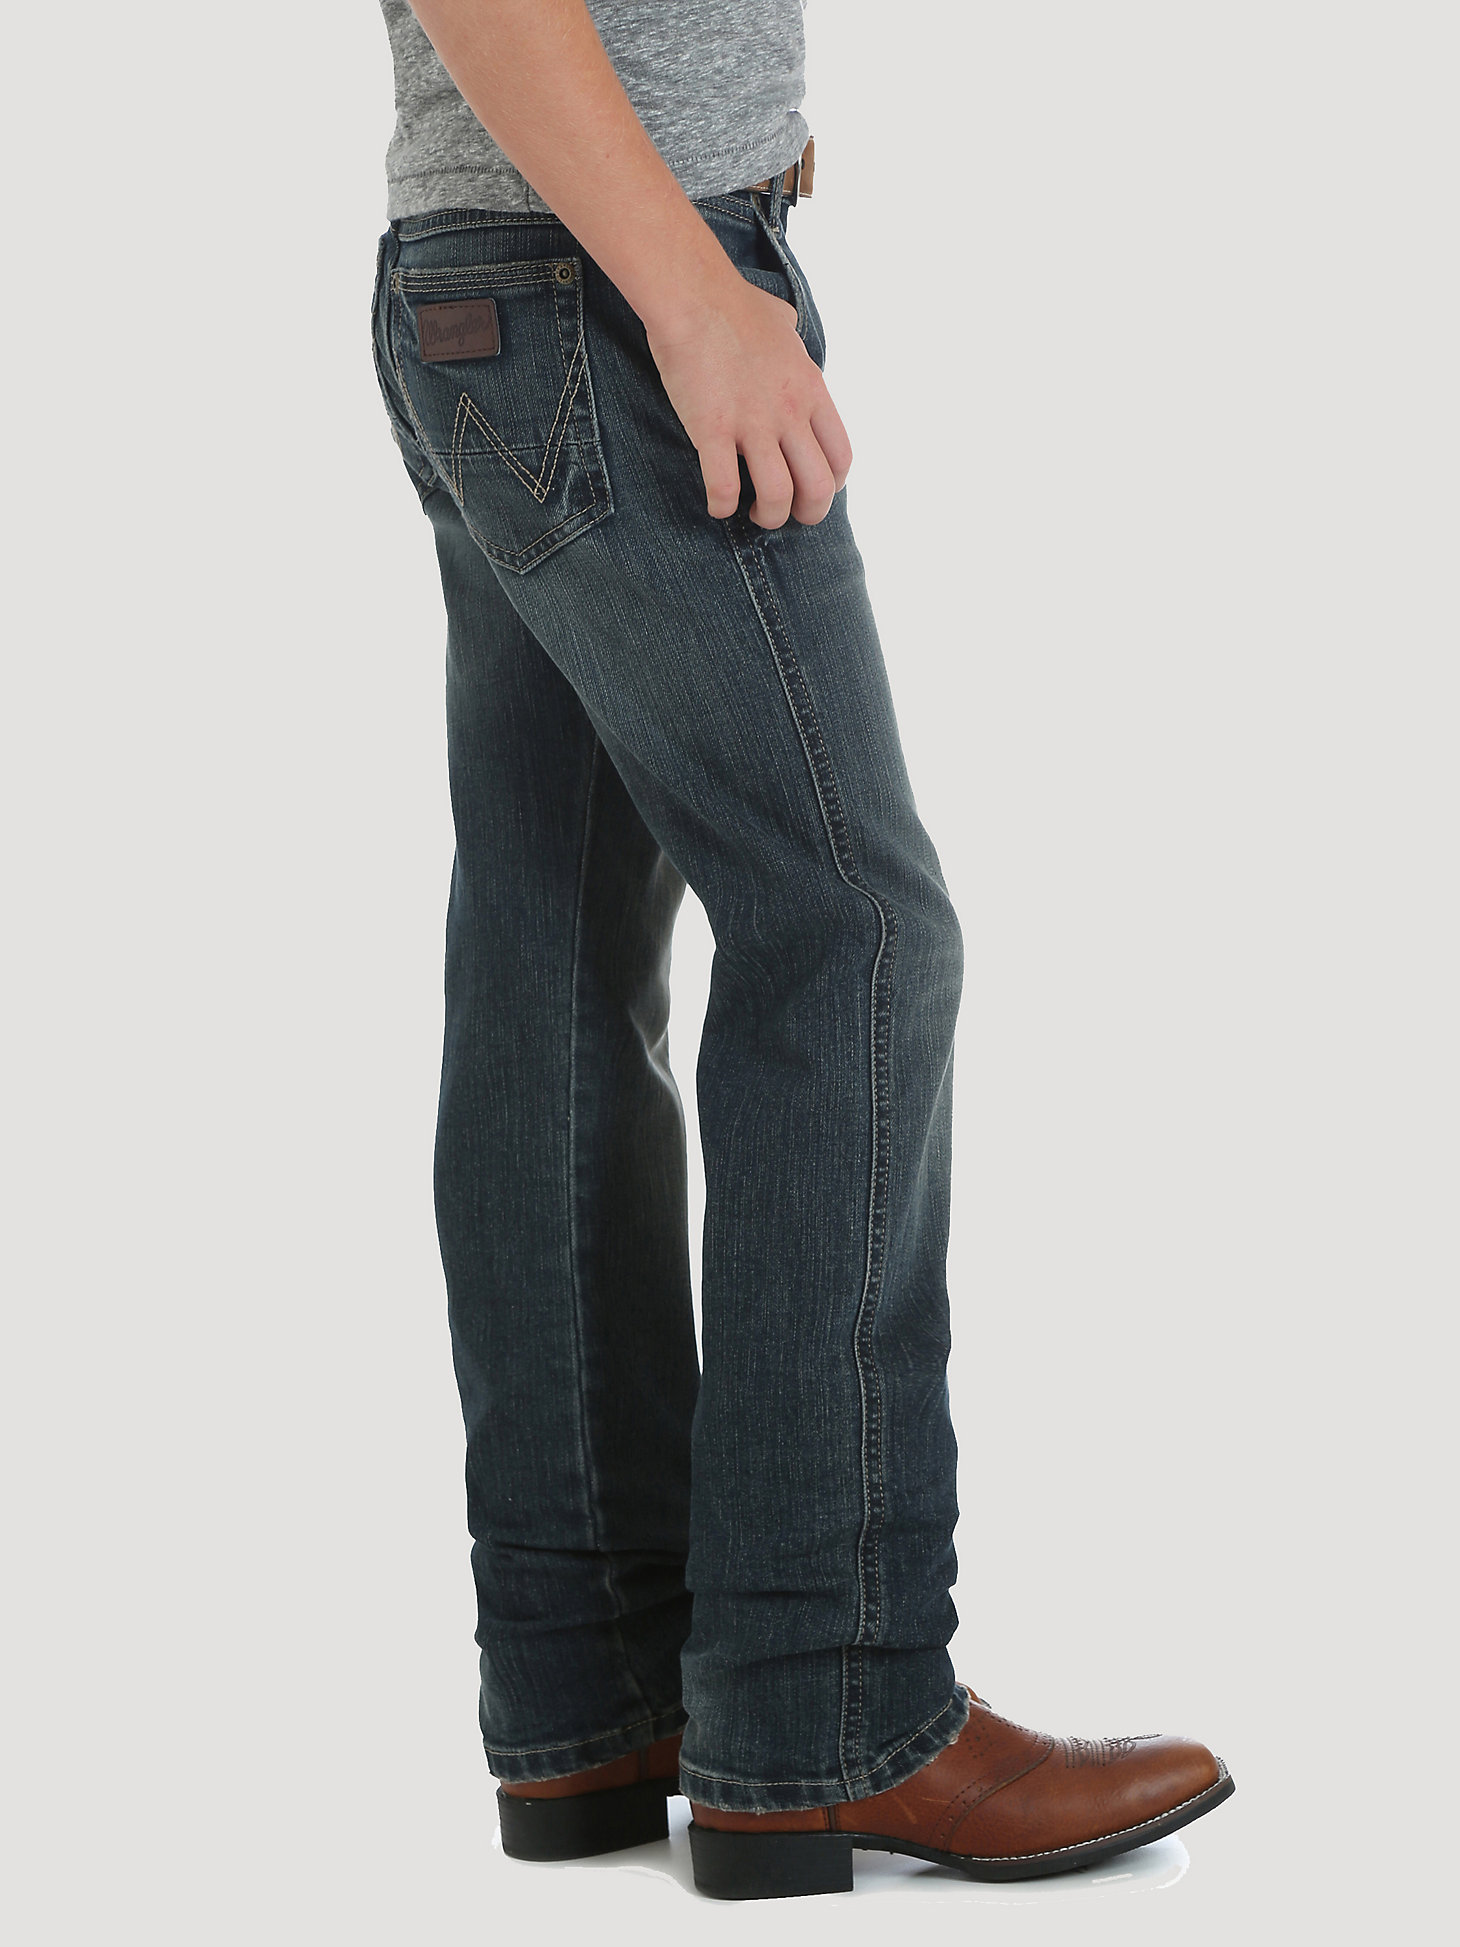 Boy's Wrangler Retro® Slim Straight Jean (8-18) in Jerome alternative view 2